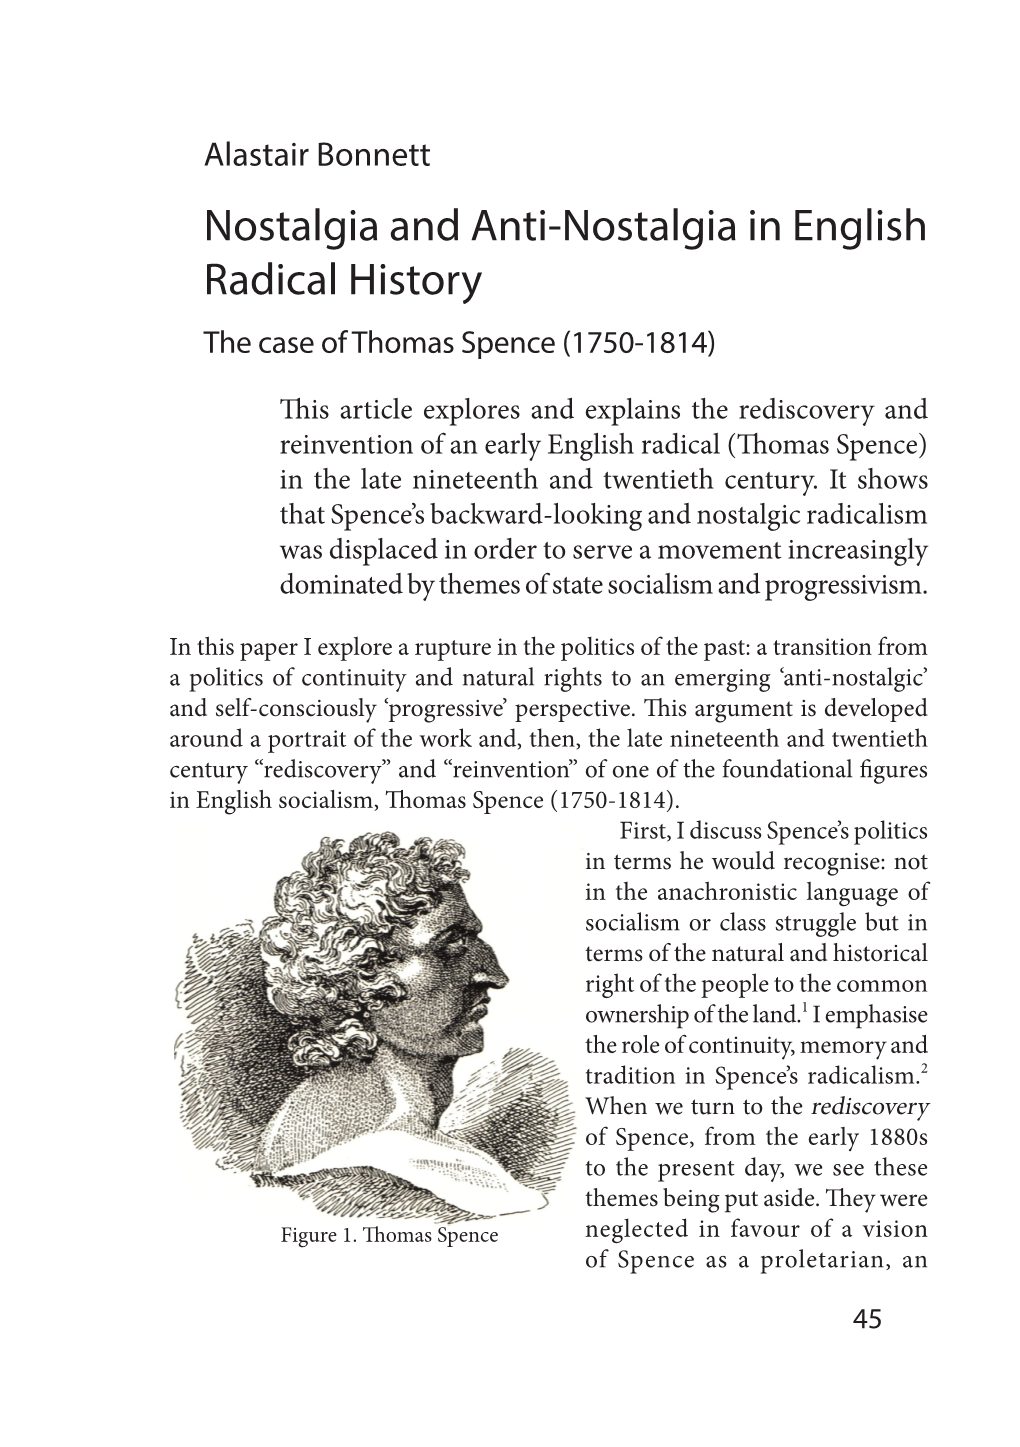 Nostalgia and Anti-Nostalgia in English Radical History the Case of Thomas Spence (1750-1814)